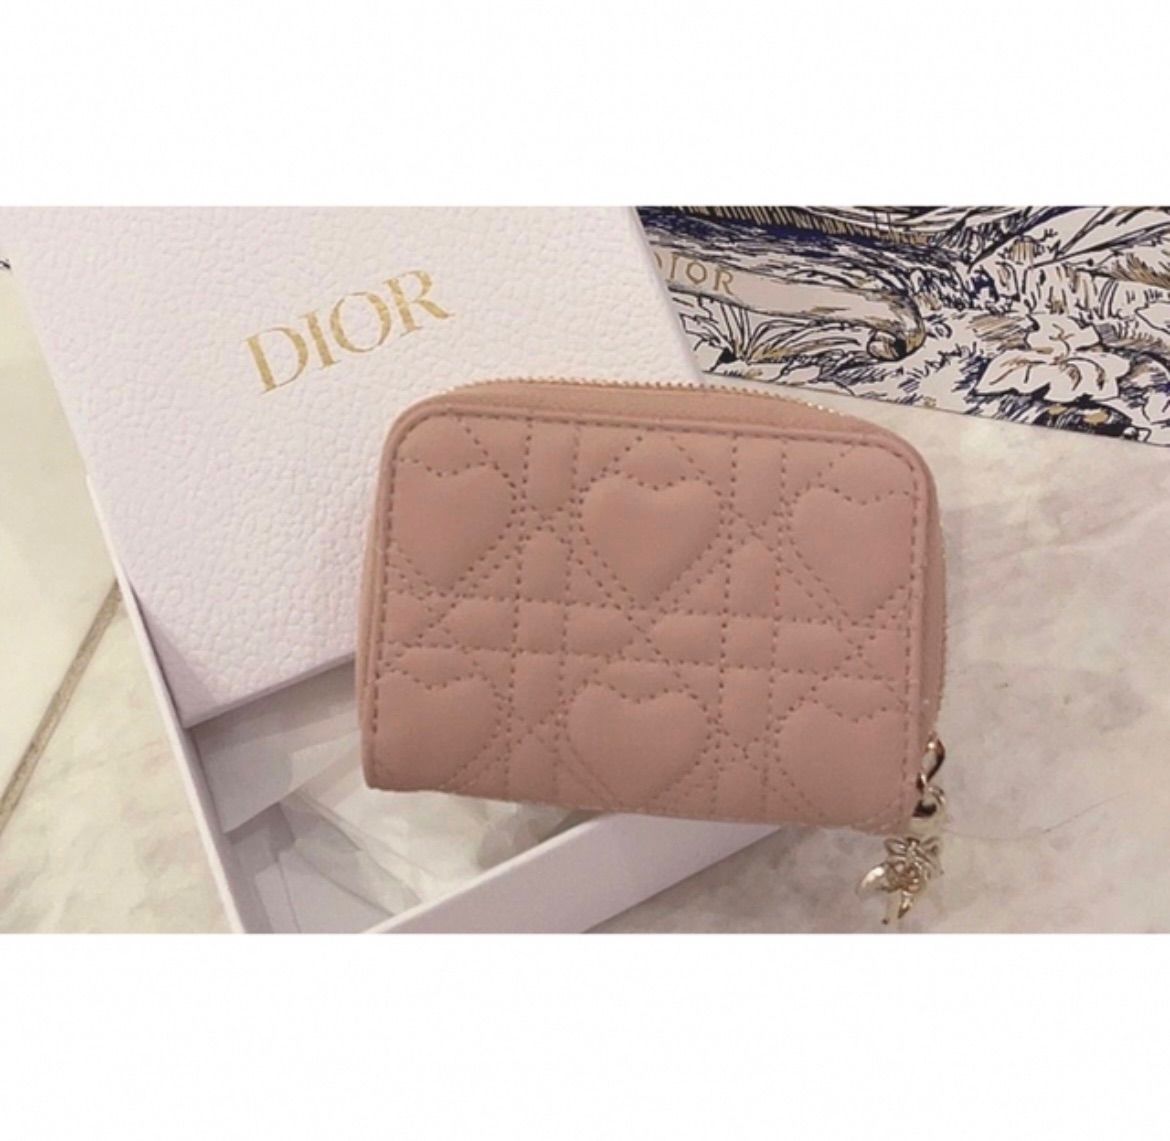 新品 国内完売品 Christian Dior ディオール LADY DIOR スモール 